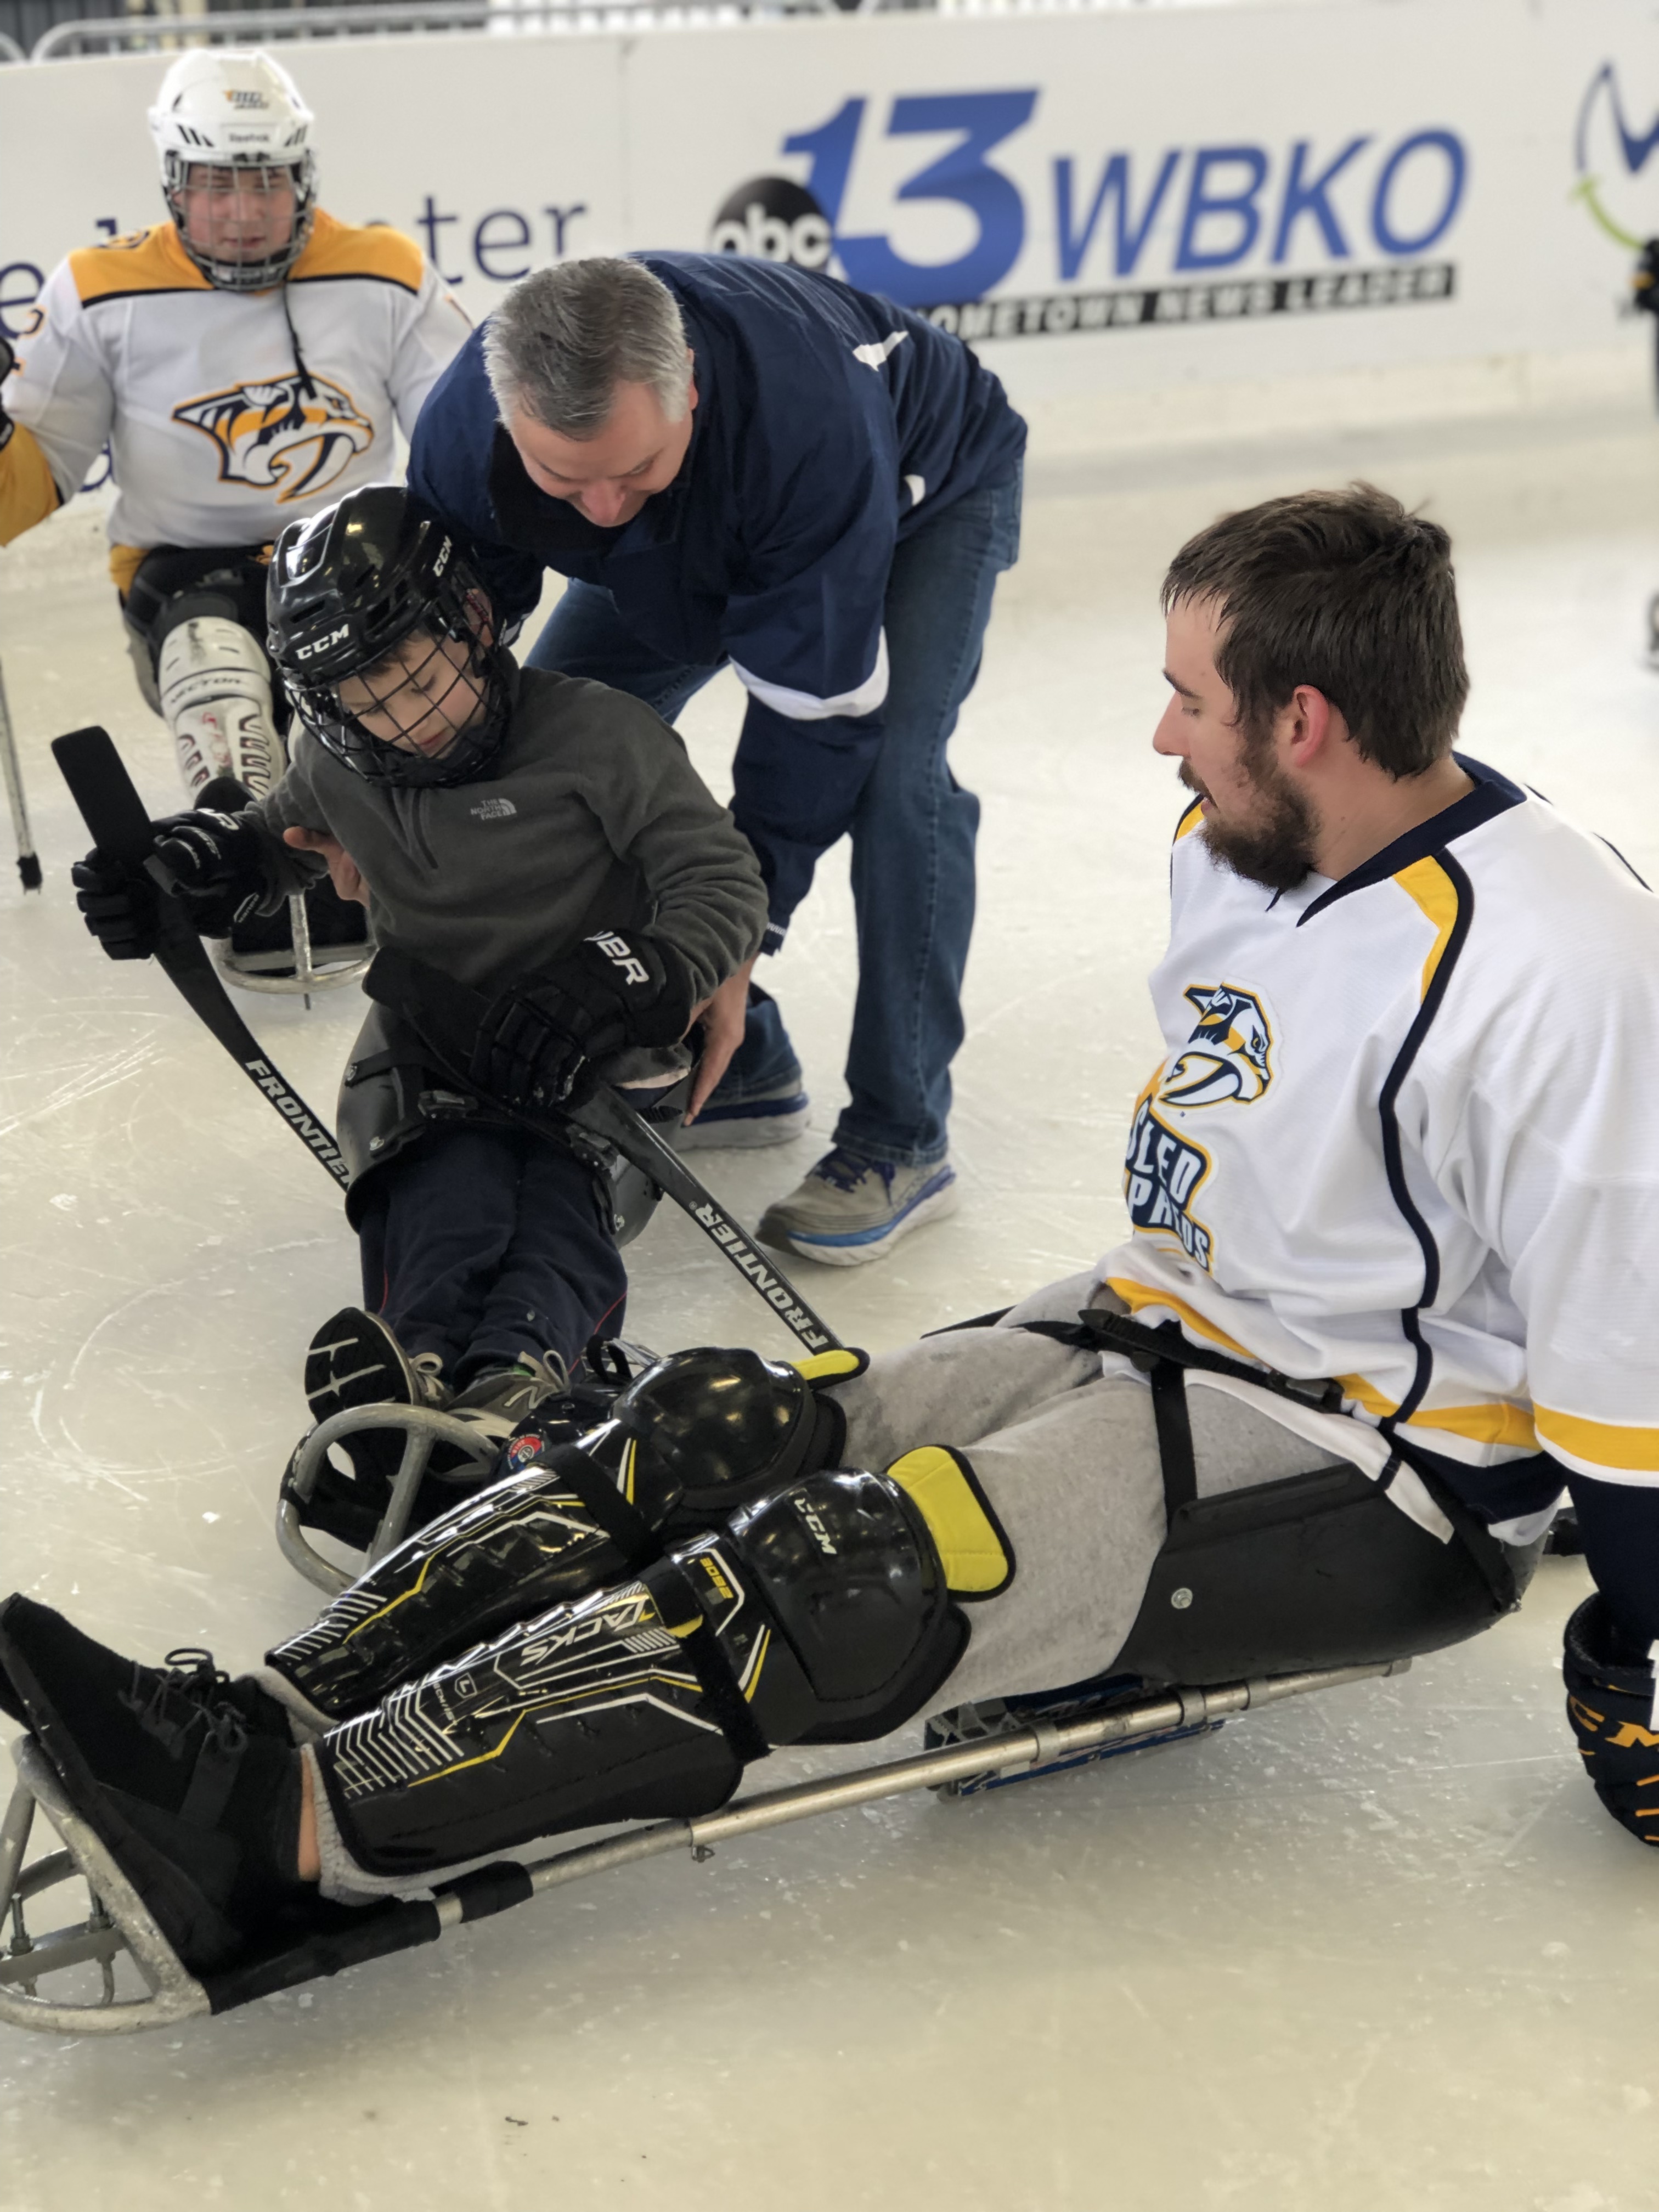 Man demonstrates sled hockey to boy